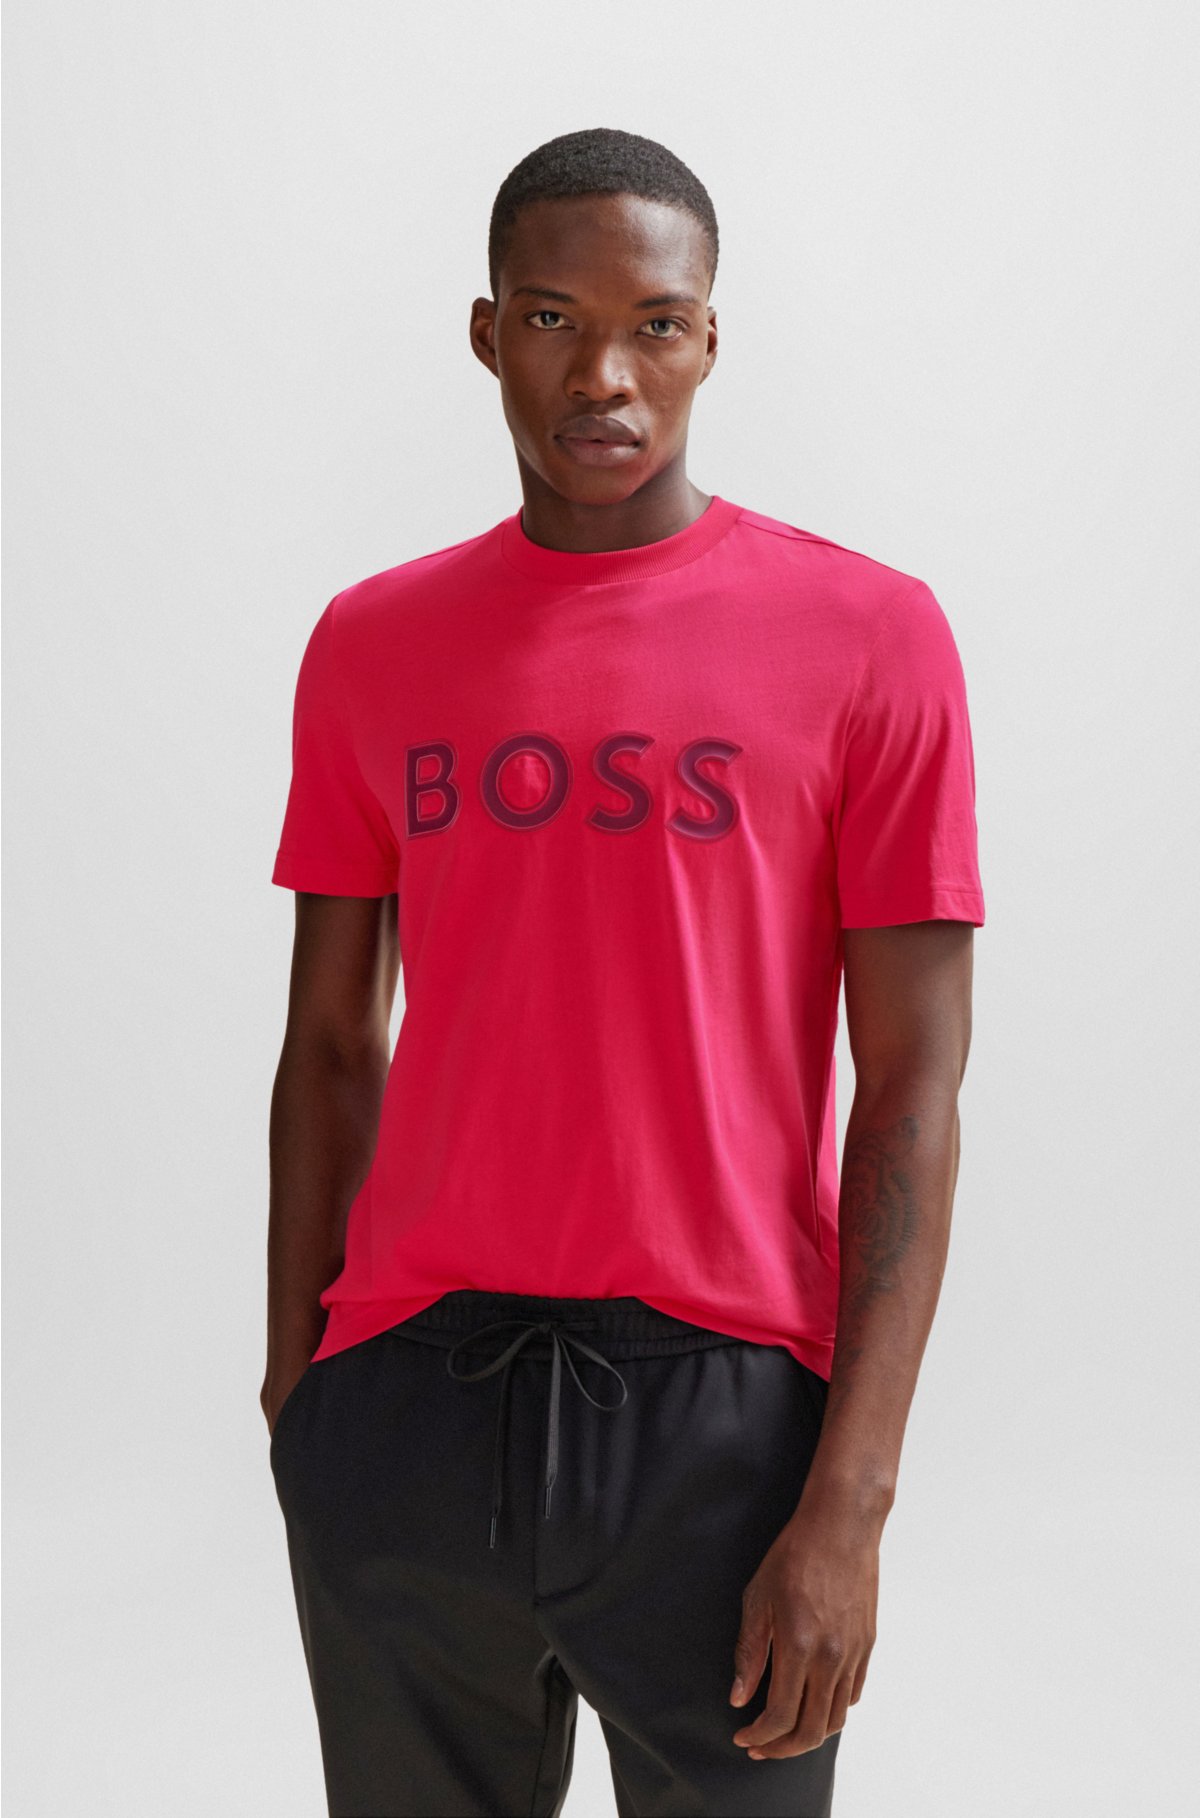 BOSS - Cotton-jersey regular-fit T-shirt with logo print